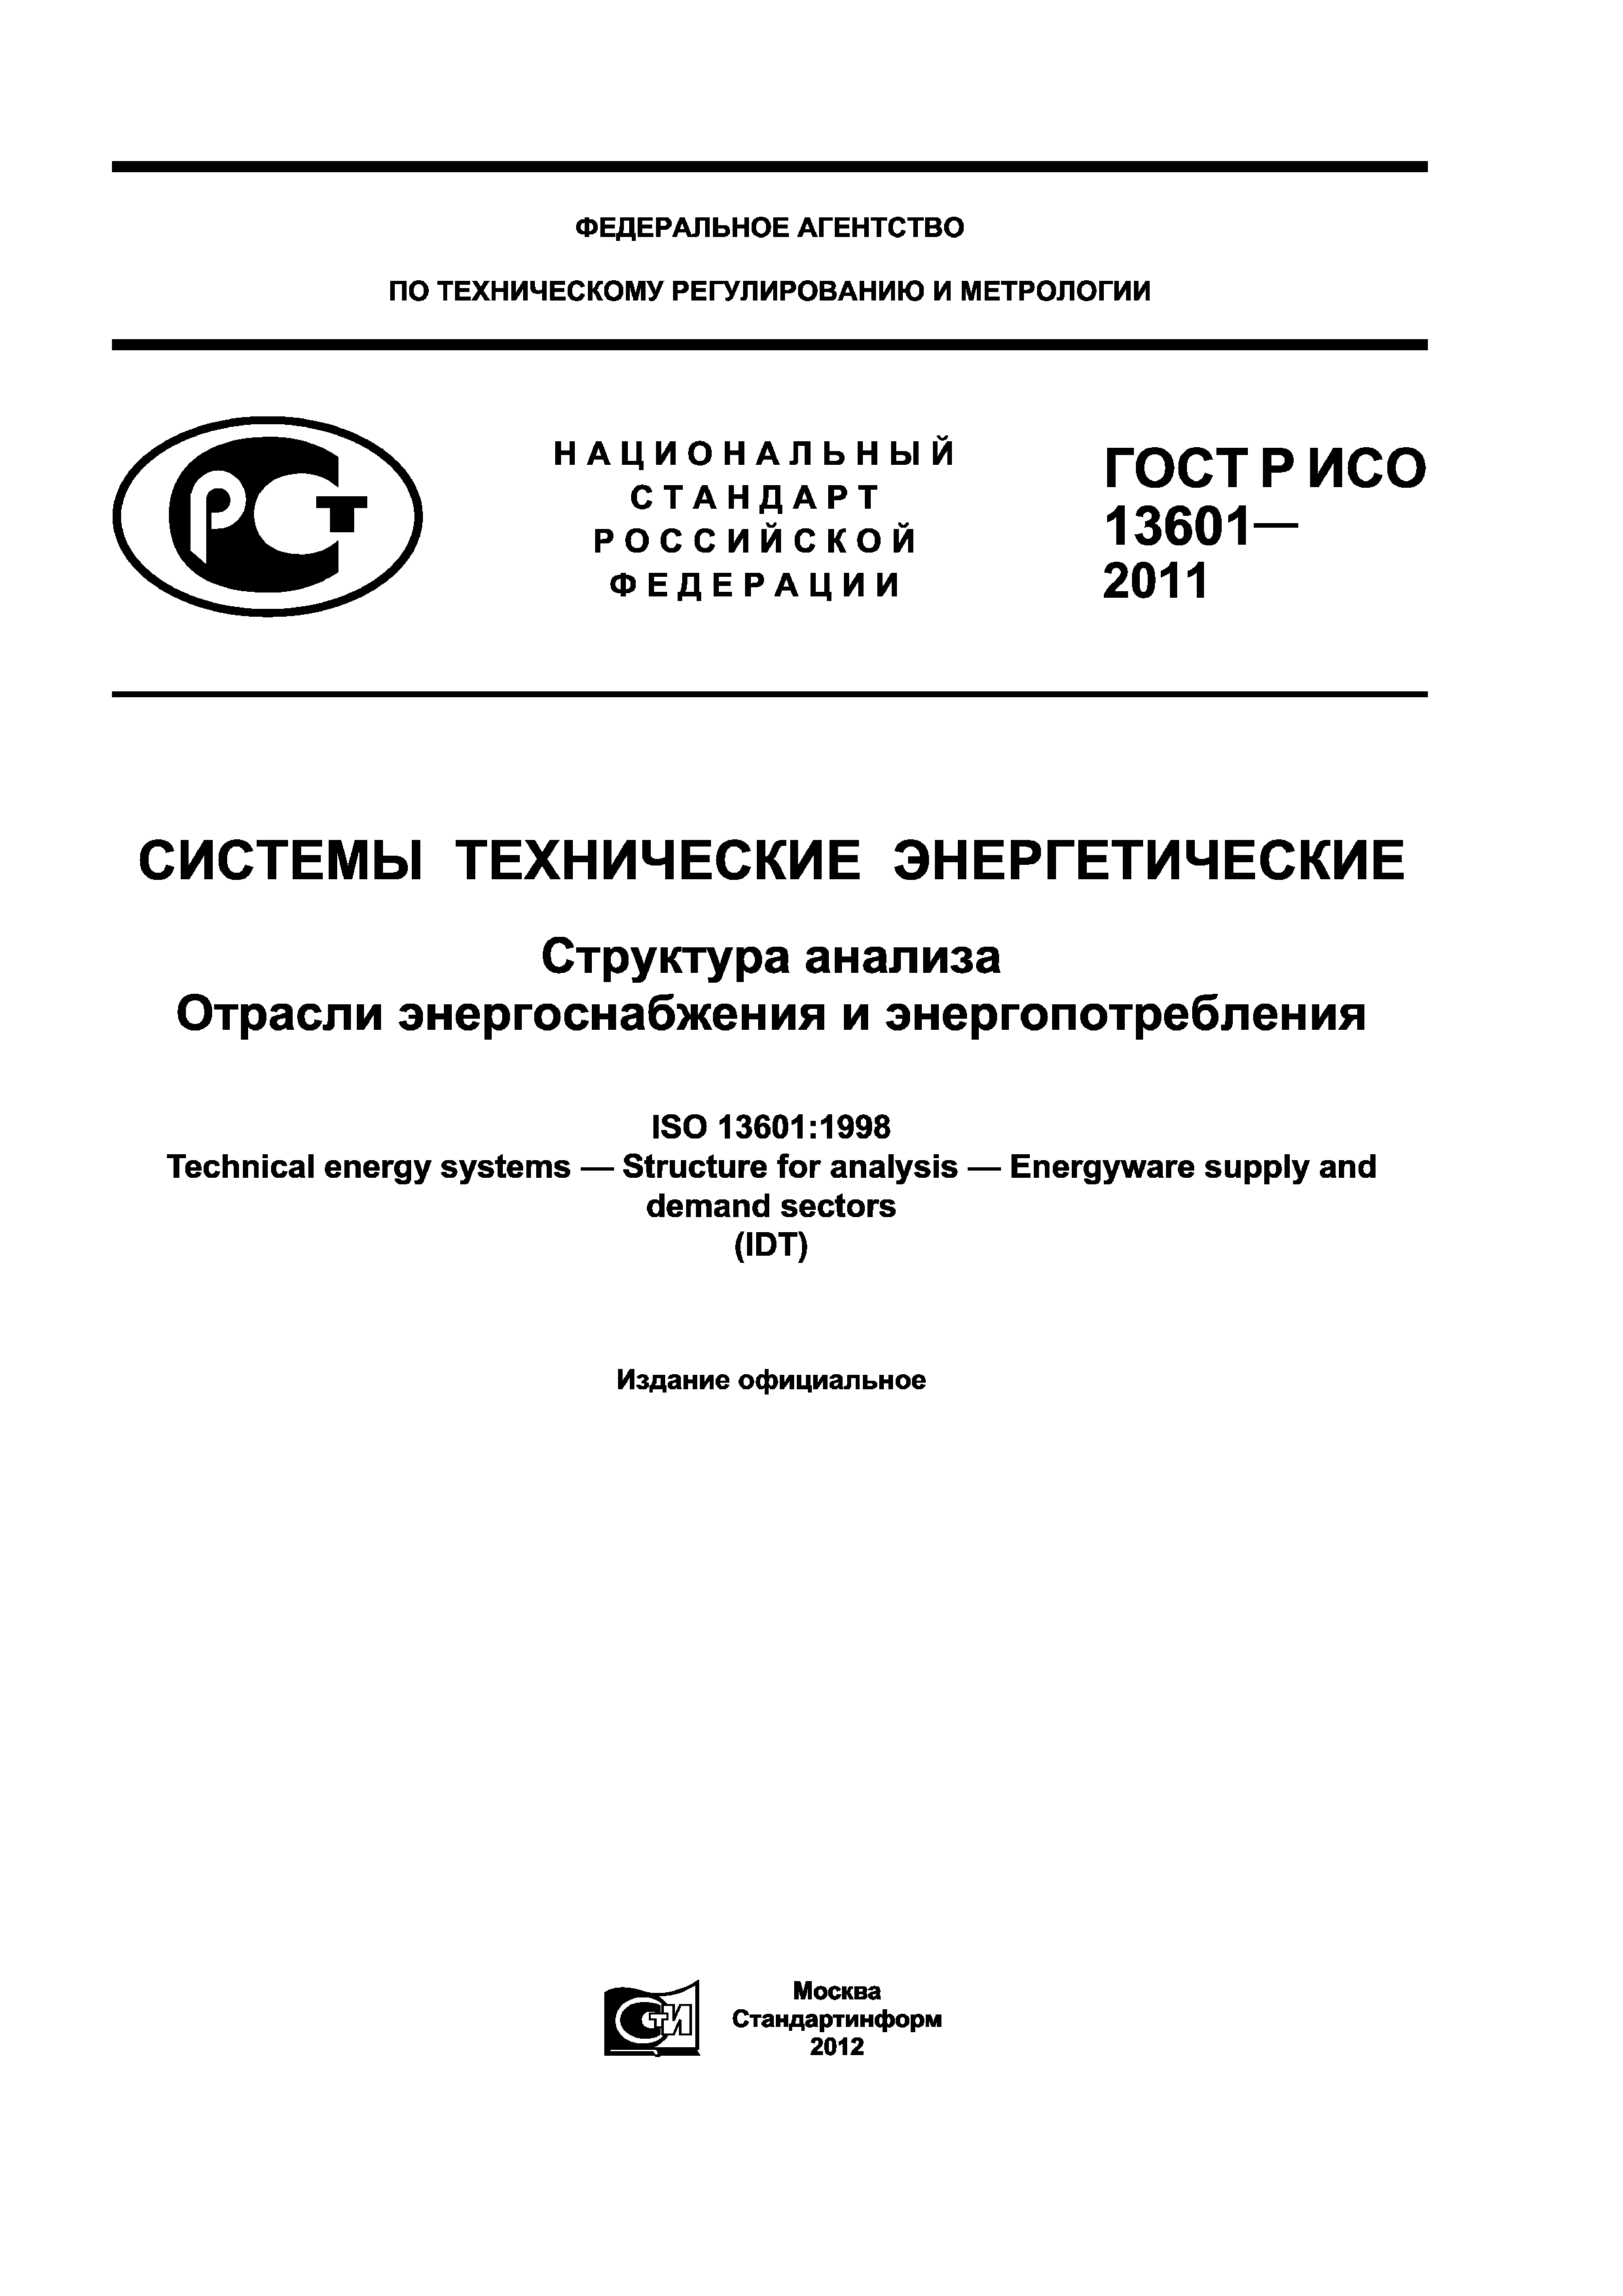 ГОСТ Р ИСО 13601-2011